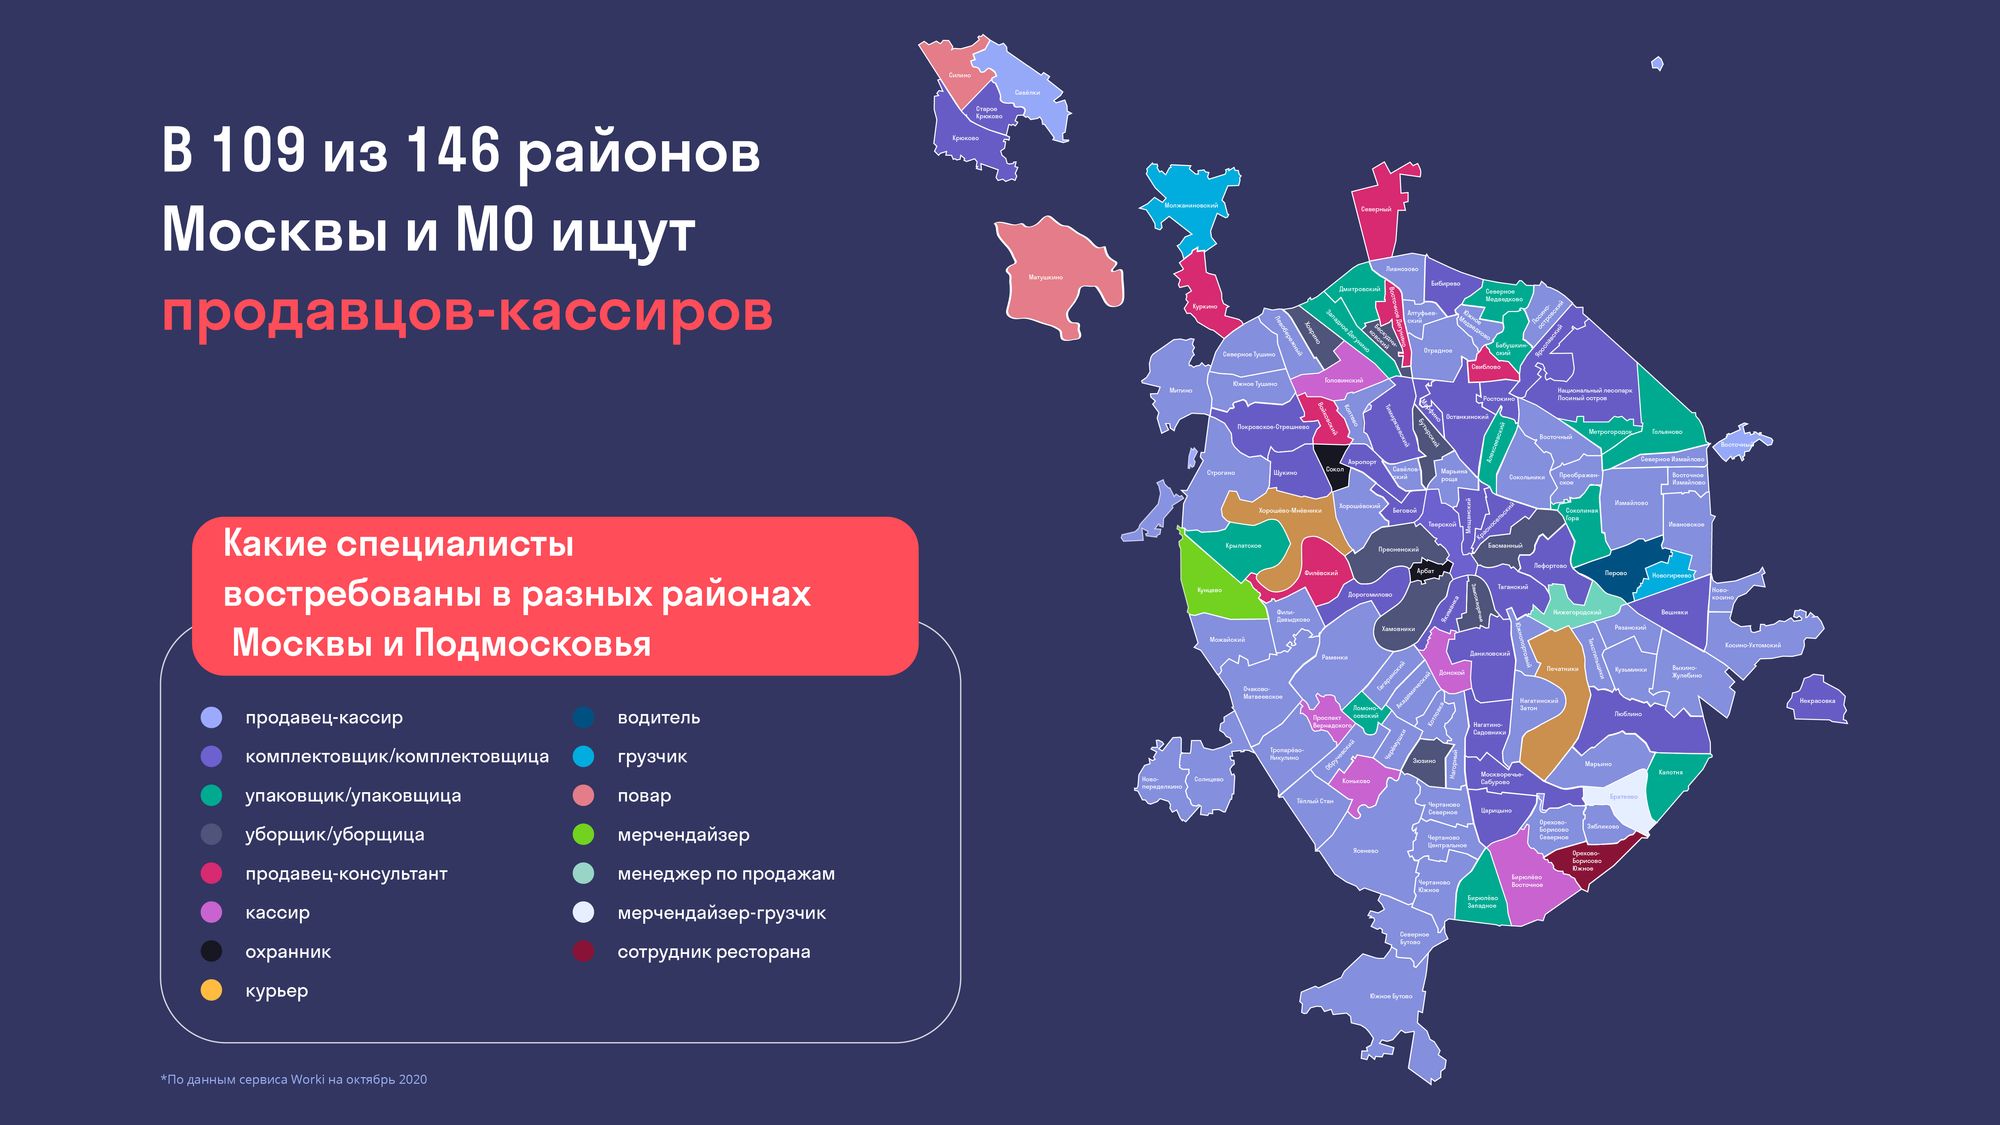 Сайт московски где. Районы Москвы. Районы Москвы на карте. Интересные районы Москвы. Москва по округам.